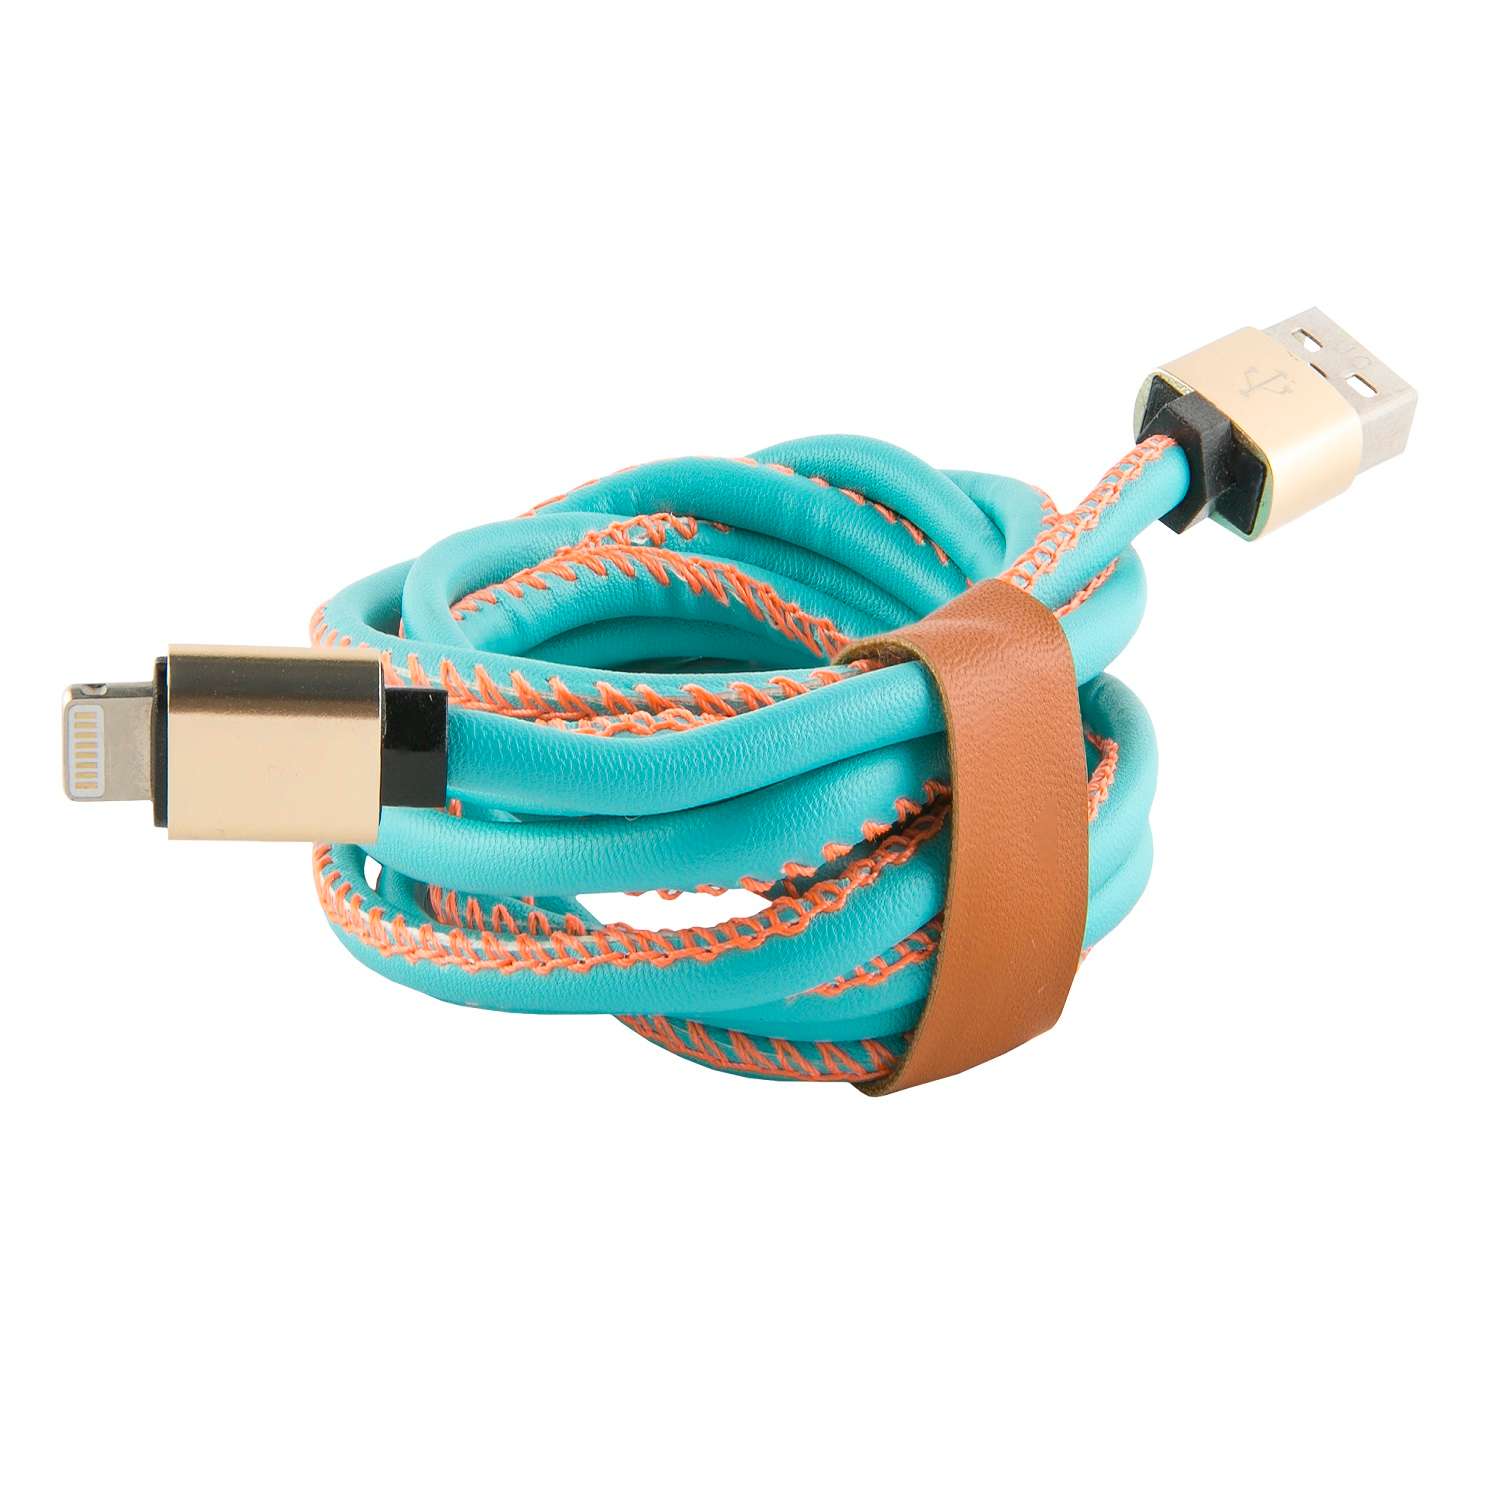 Дата-кабель Red line USB - Type-c (2 метра) Оплетка "экокожа", коричневый. Red line кабель fishnet синий. Harness 8.2 Red line. Redline кабель Mirco. Кабель red line